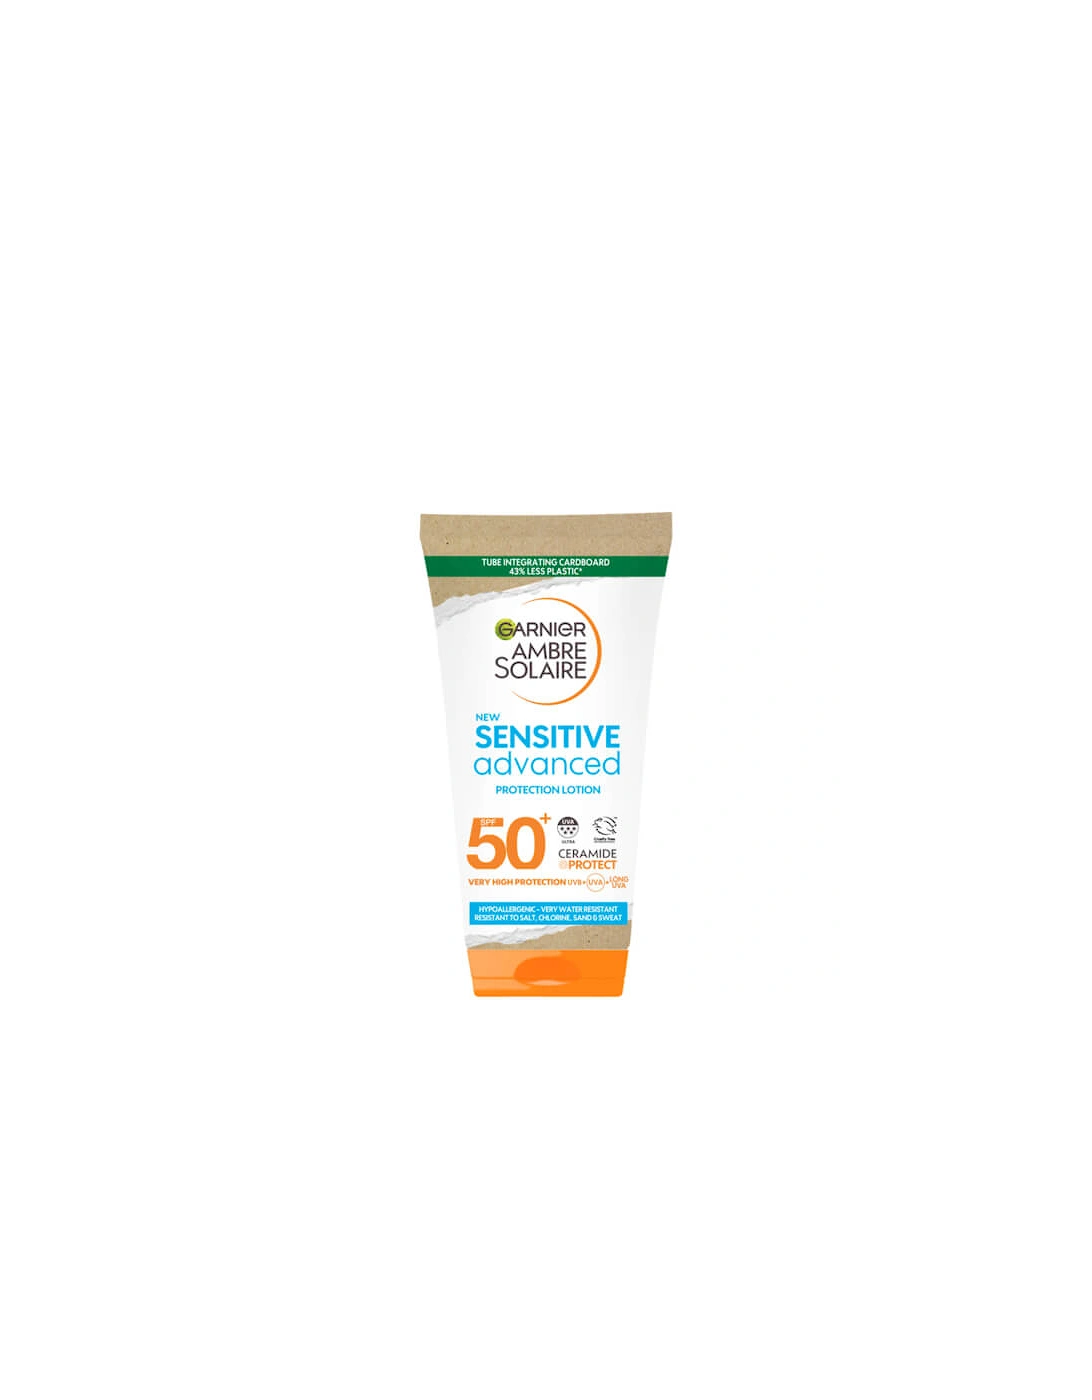 Ambre Solaire Mini Sensitive Hypoallergenic Sun Protection Cream SPF50 50ml - - Ambre Solaire Sensitive Sun Cream SPF 50+ 50ml Travel Size - Sorna, 2 of 1